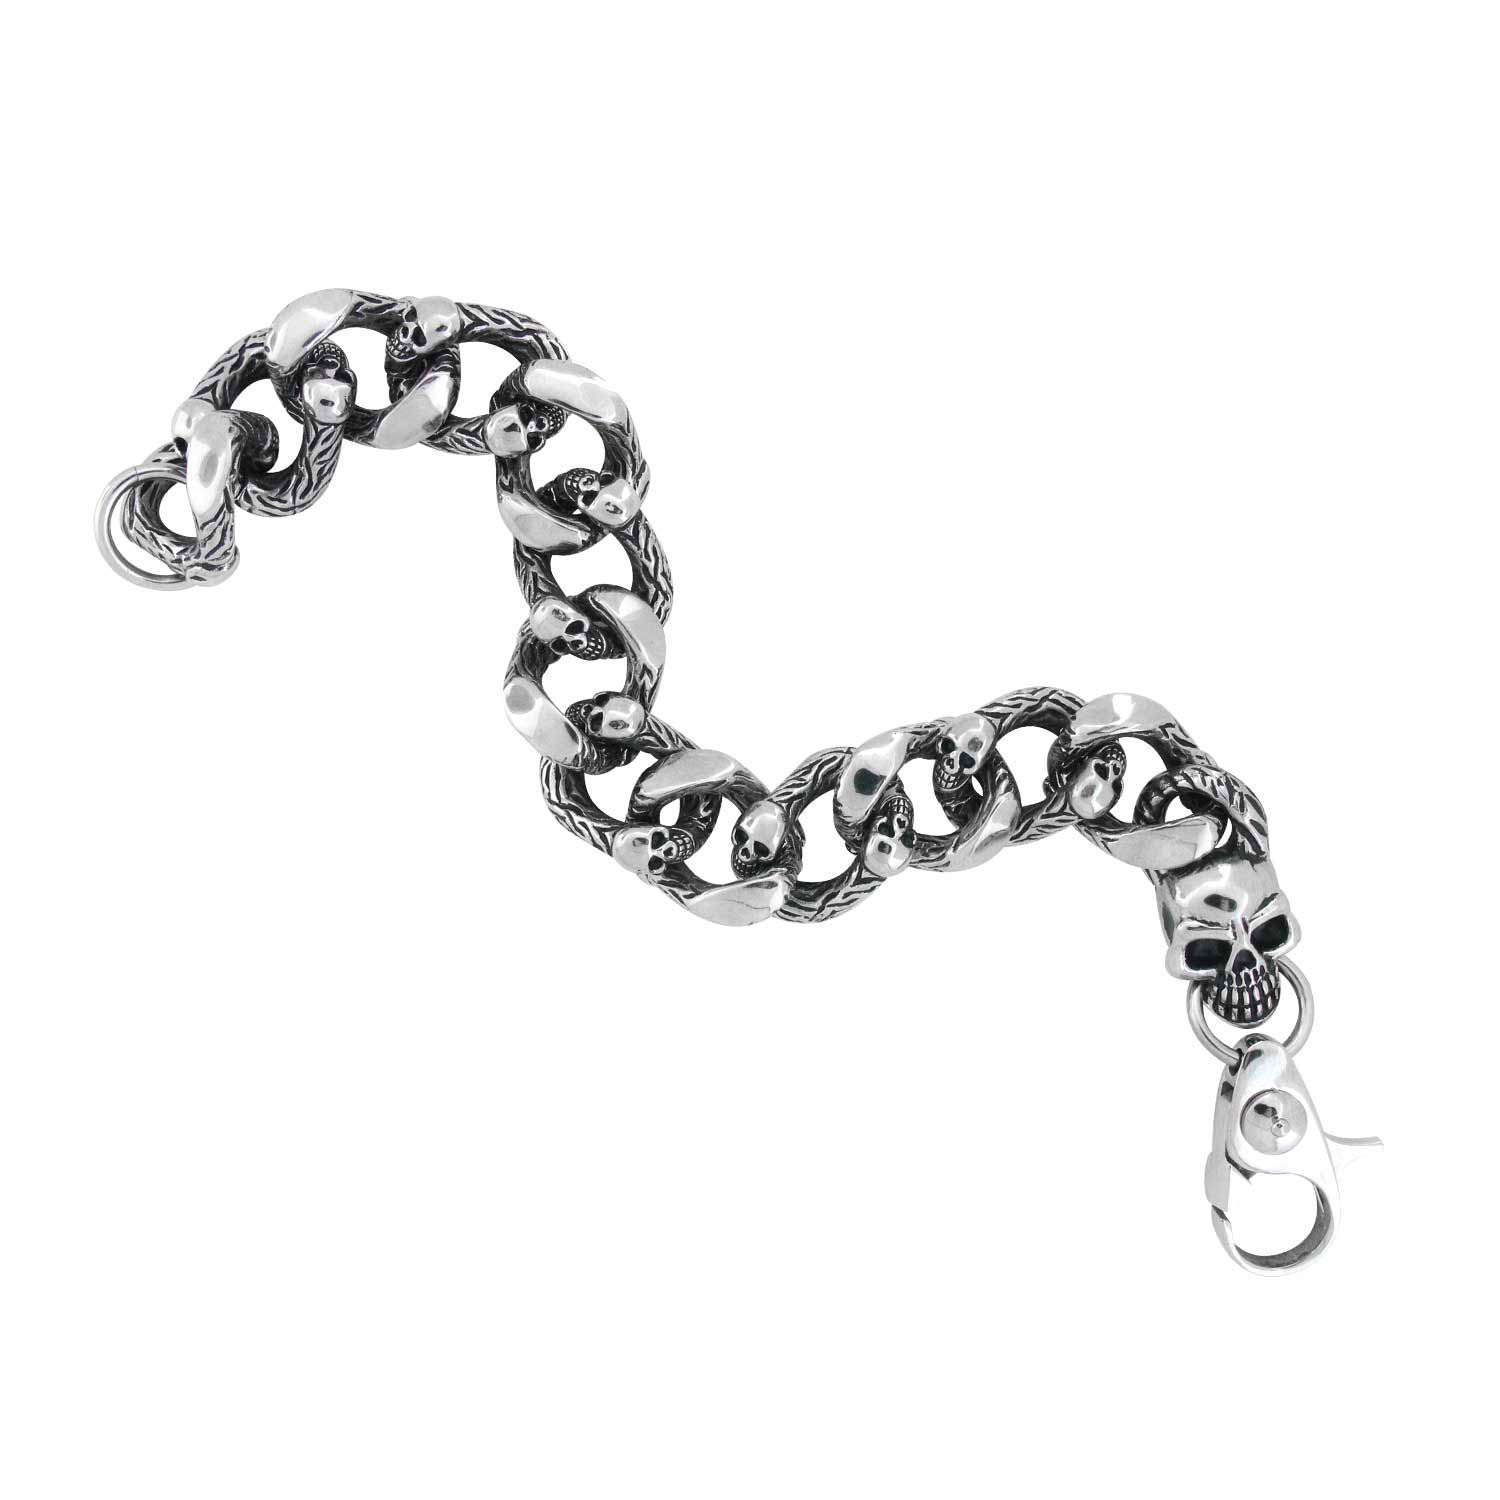 Heavy Duty Curb Chain Bracelet with Casted Skulls Image 2 Glatz Jewelry Aliquippa, PA